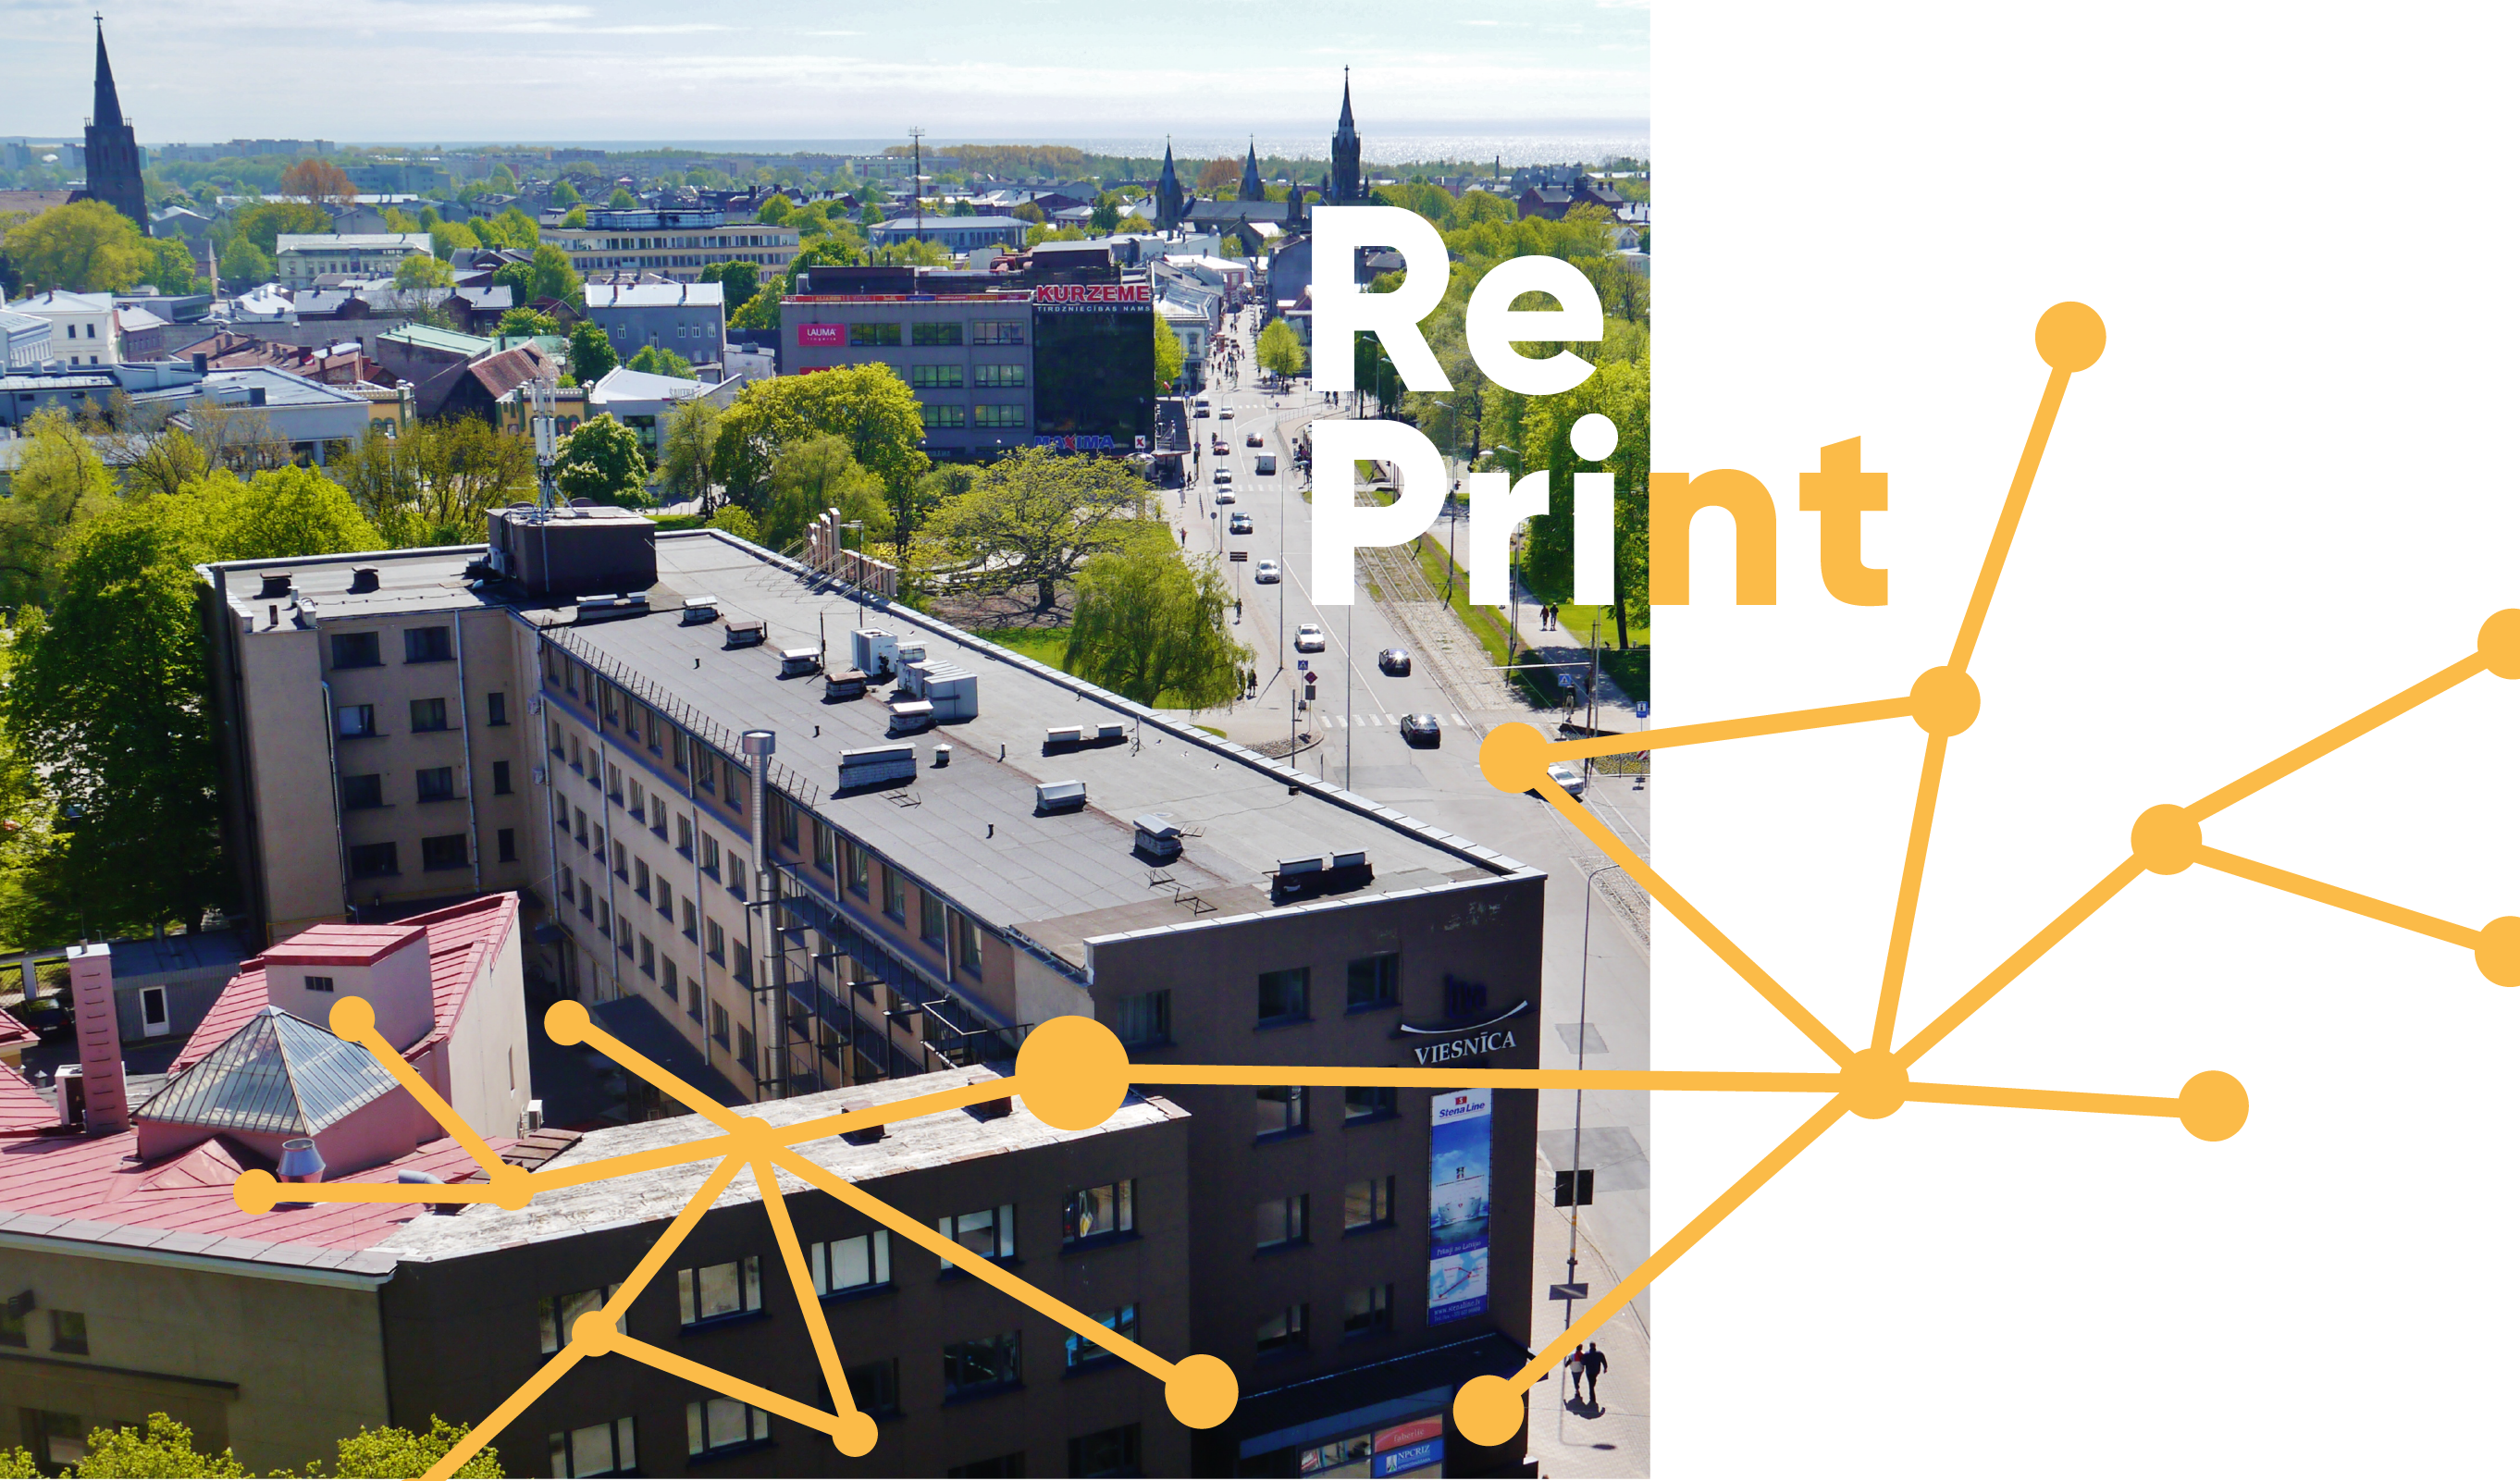 play piano Brace Digital Pārskatot radošo pilsētu konceptu: tīkli, starpnieki un attīstības virzieni  / RePrint - Latvijas Kultūras Akadēmija